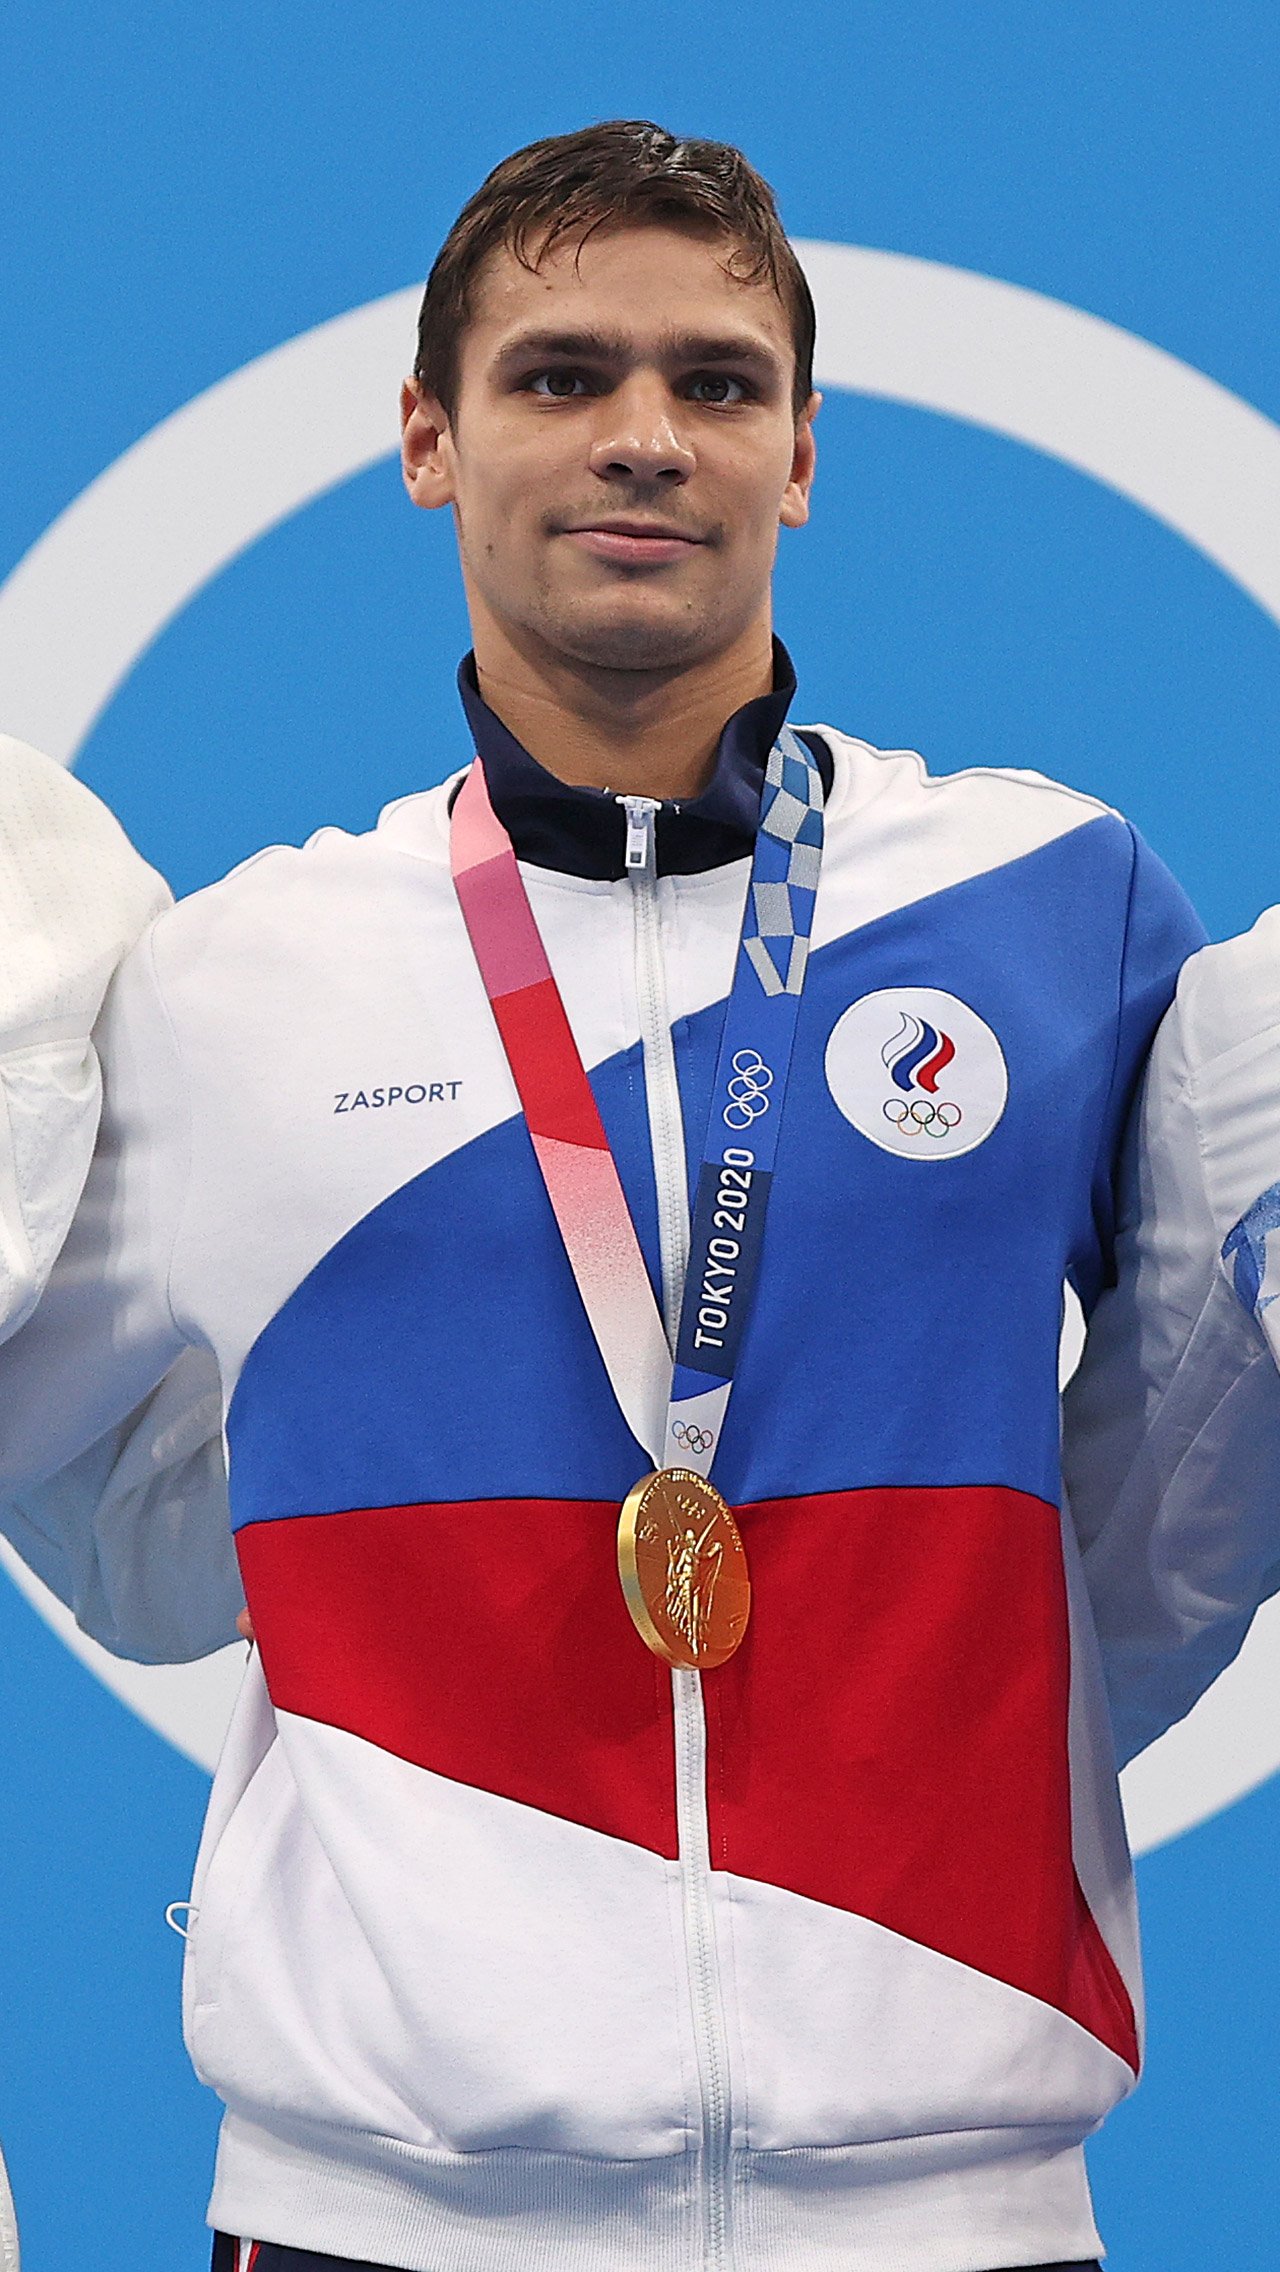 Пловец Евгений Рылов за два золота и одно серебро получит 10,5 млн рублей. Но при этом Евгений может ещё дважды добраться до пьедестала в составе эстафетных команд.